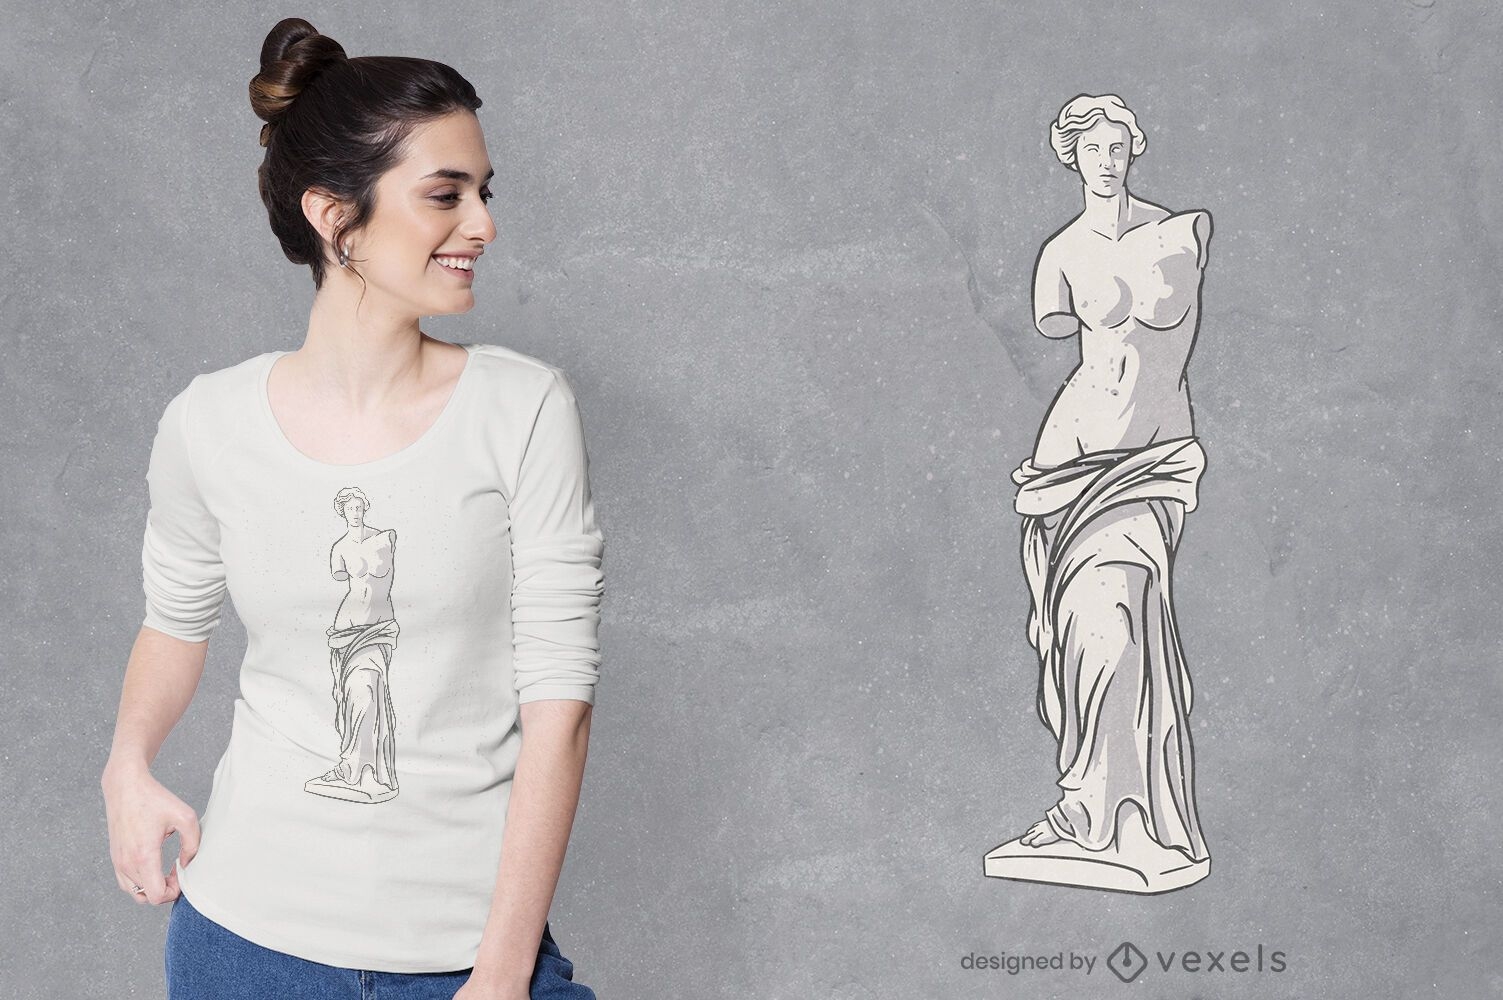 Venus statue t-shirt design